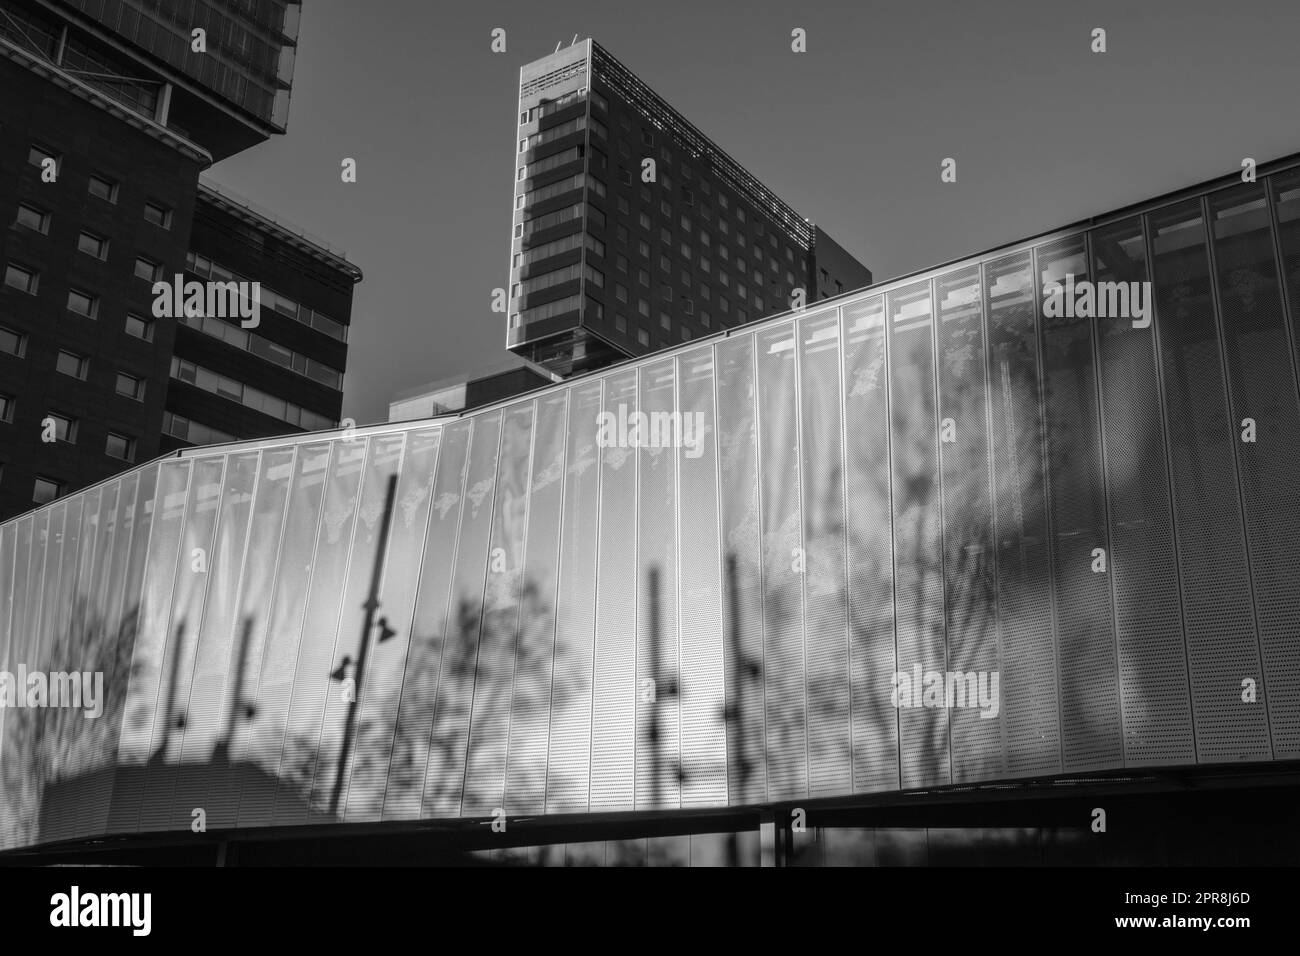 Géométries urbaines et ombres. Vue à angle bas de la place Willy Brandt à Barcelone, Espagne. Banque D'Images